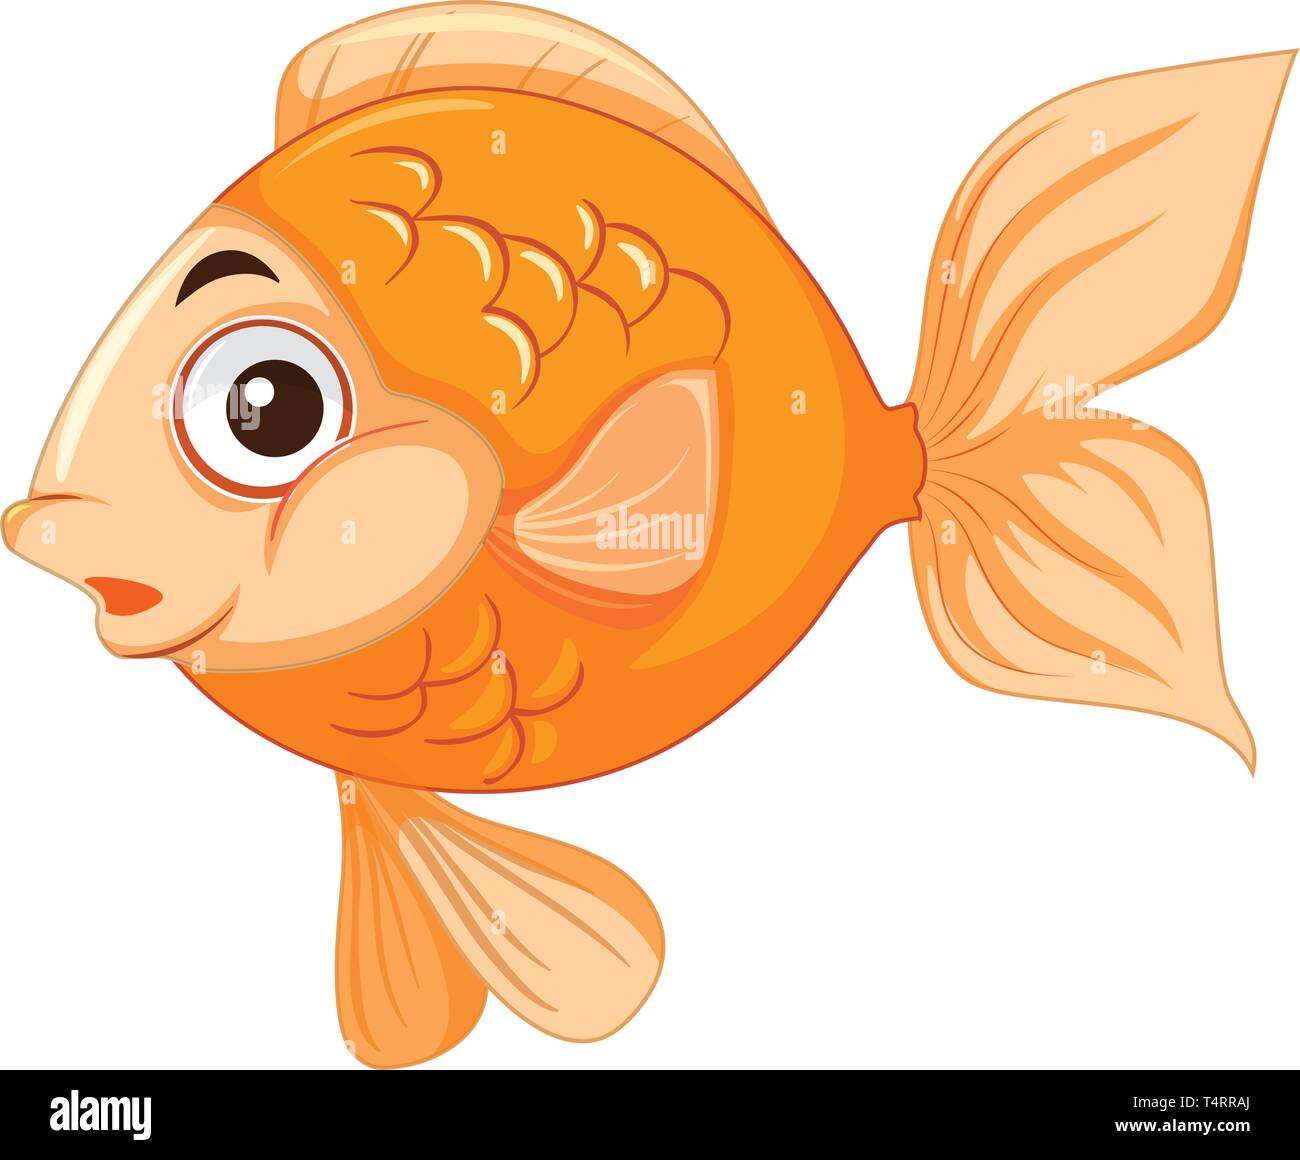 Fisch charakter Stock-Vektorgrafiken kaufen - Alamy